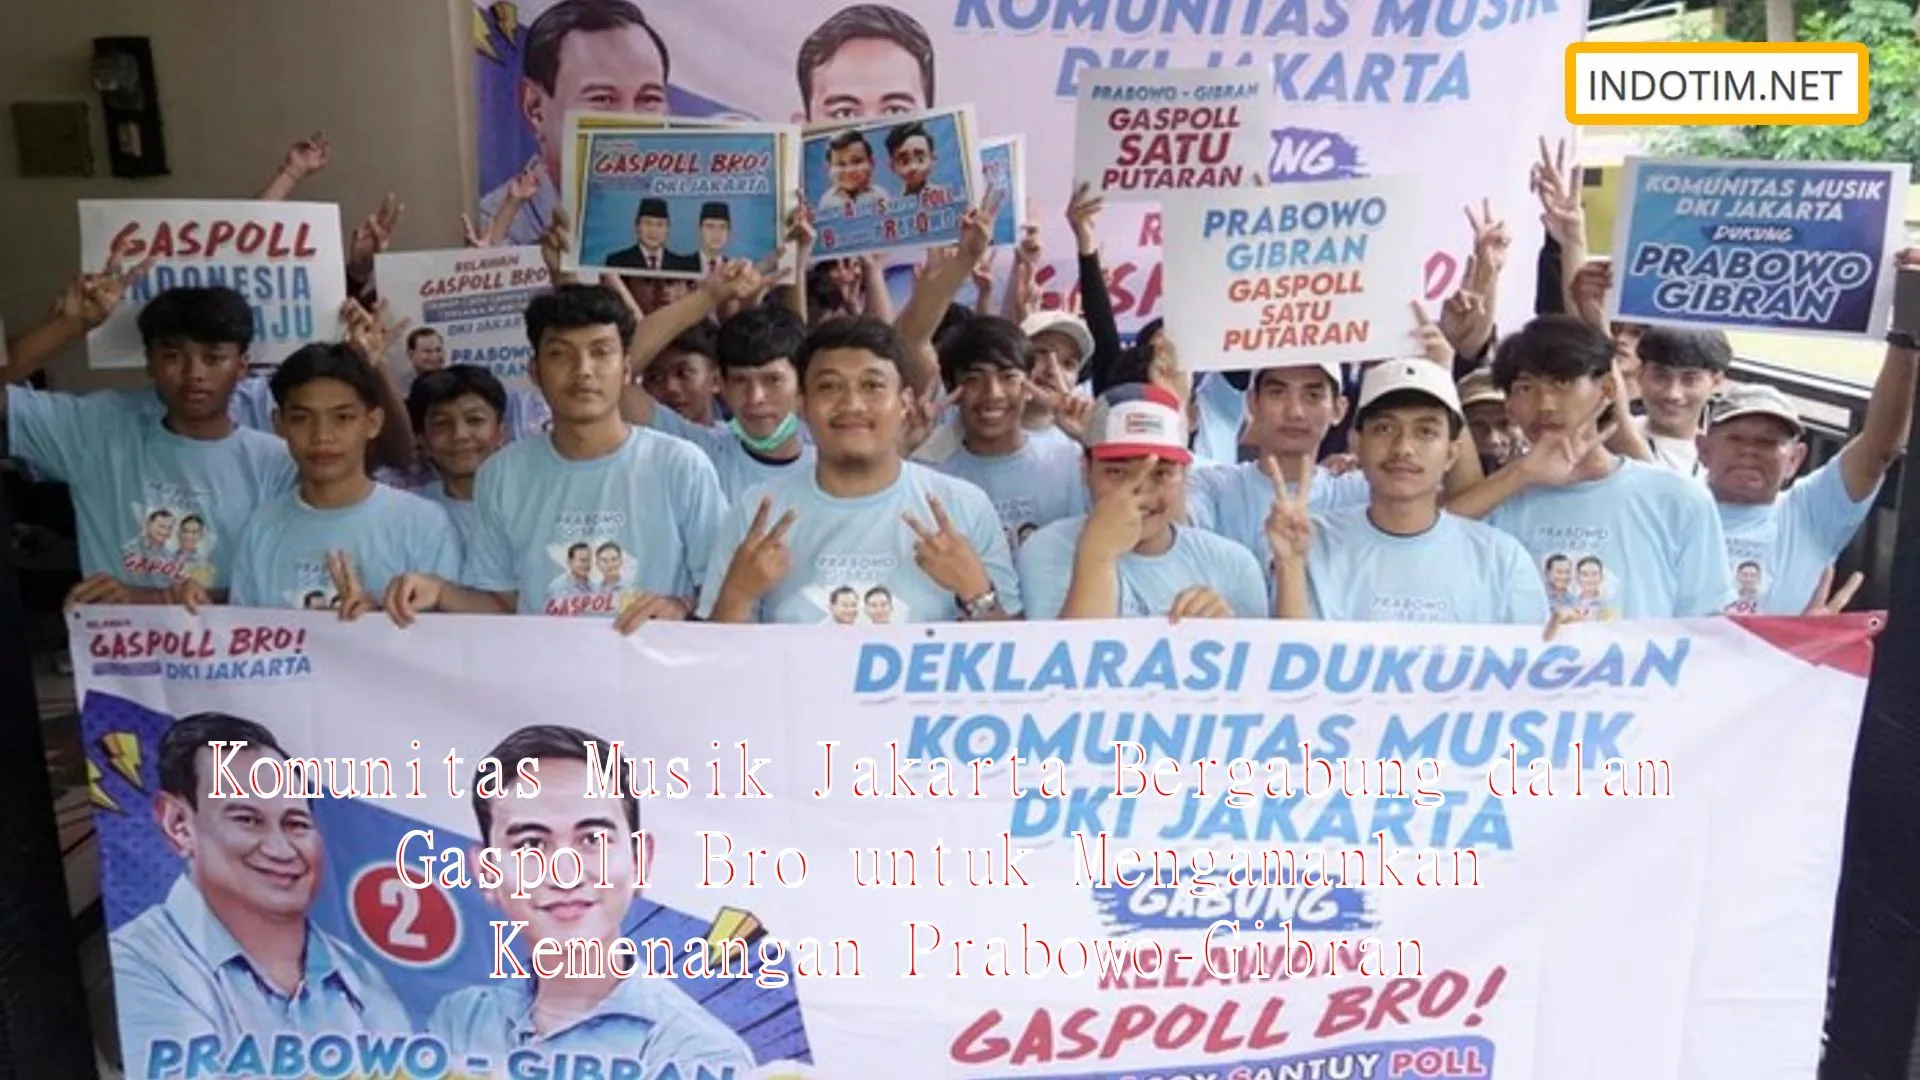 Komunitas Musik Jakarta Bergabung dalam Gaspoll Bro untuk Mengamankan Kemenangan Prabowo-Gibran